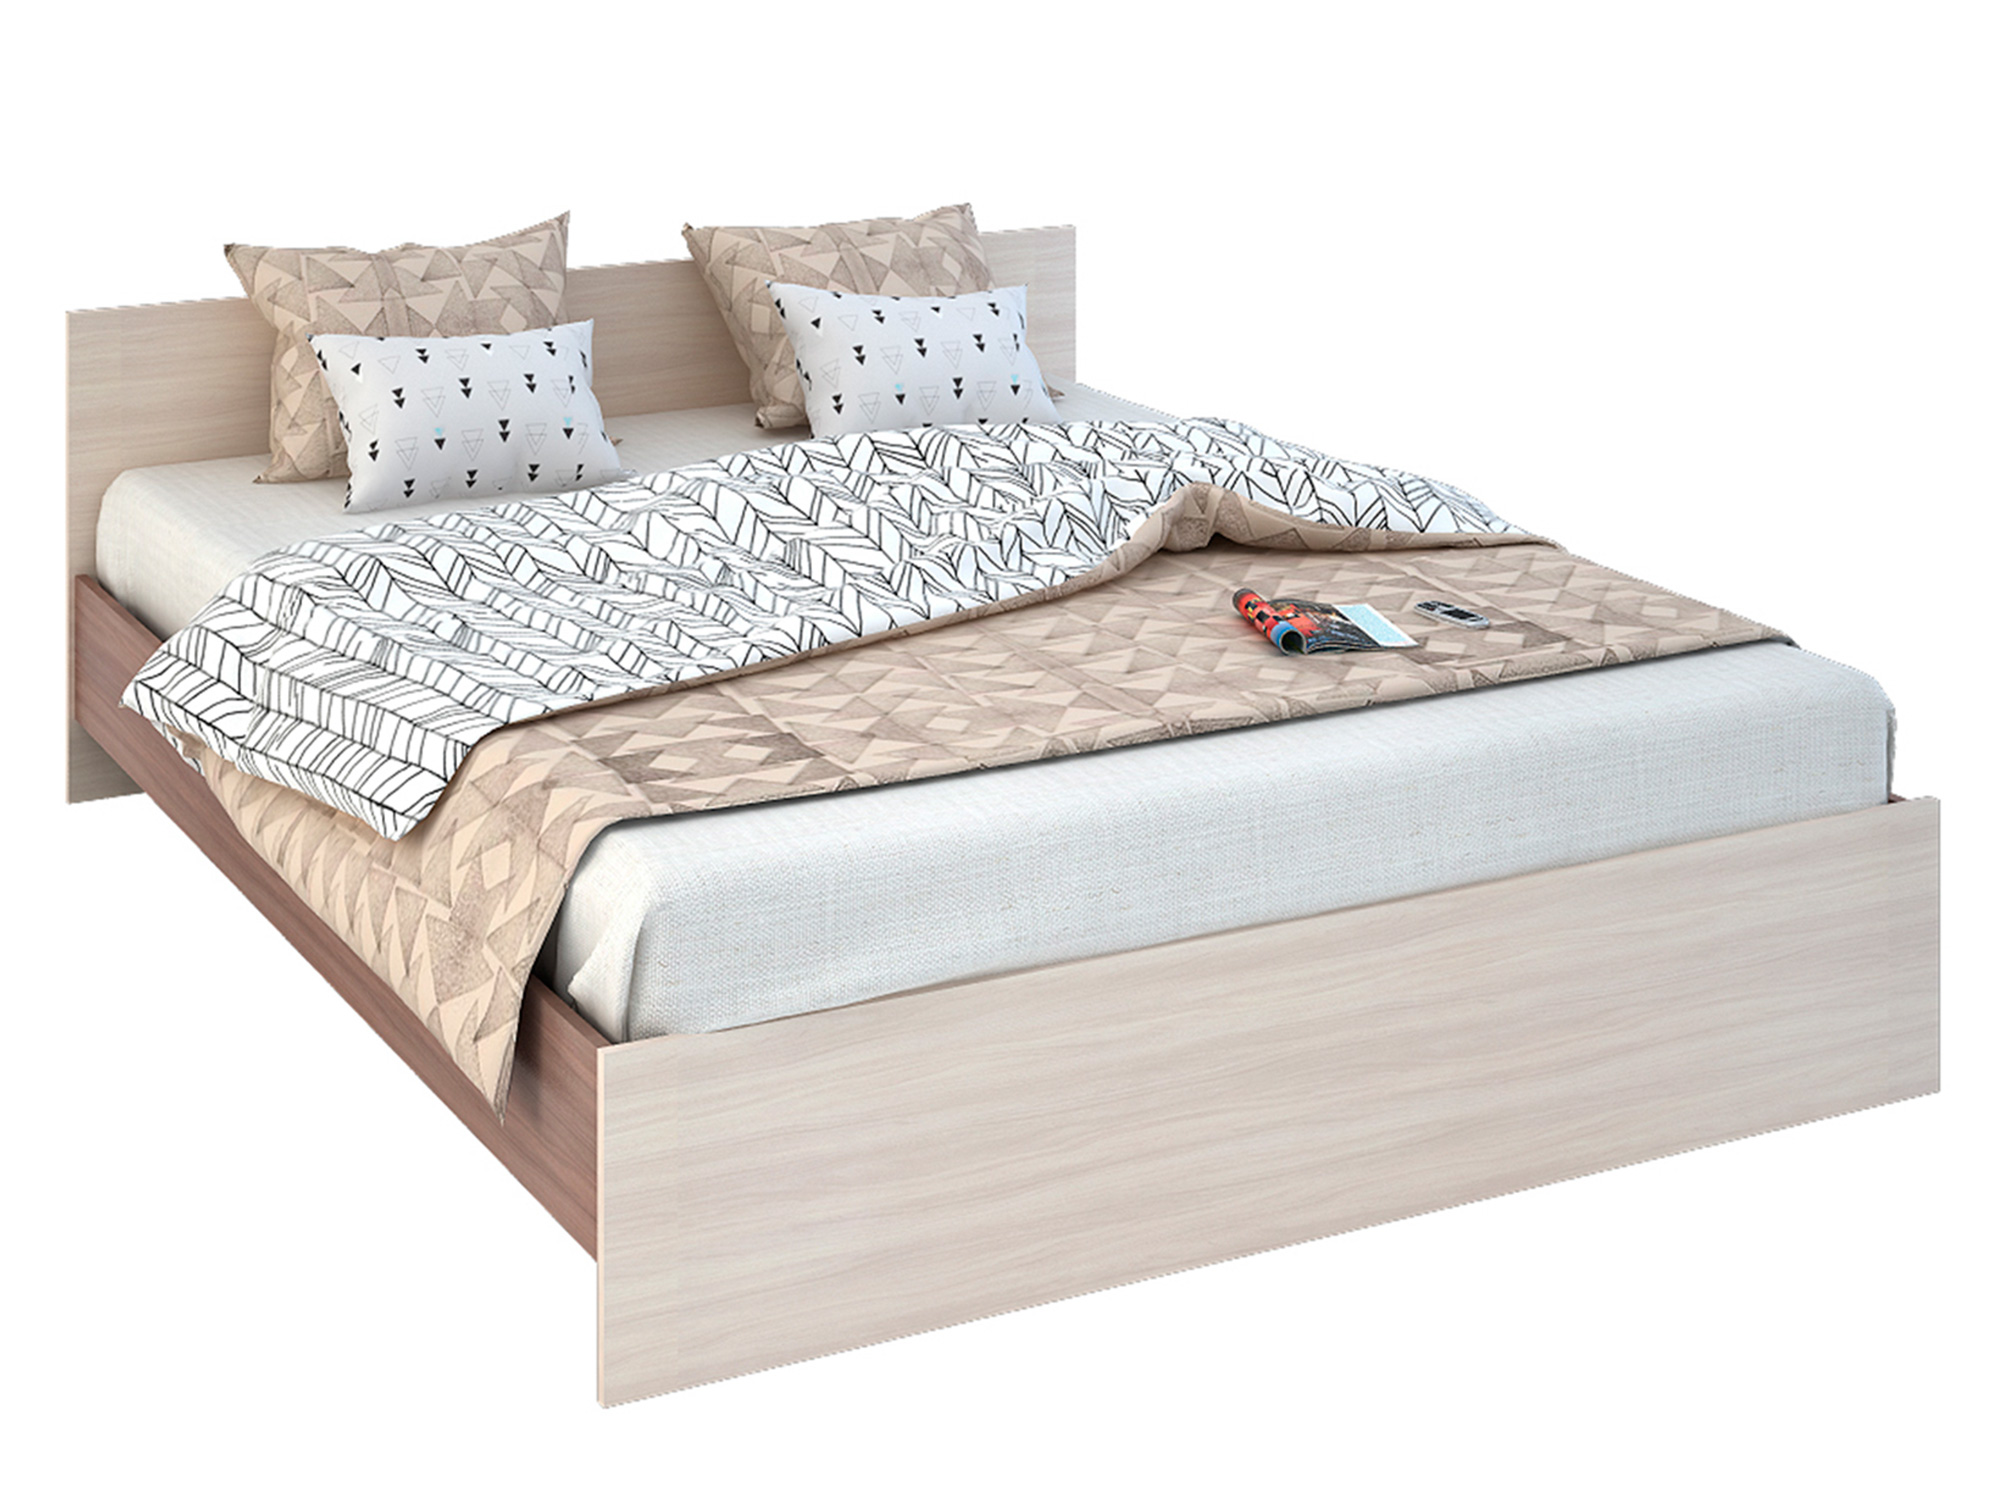 Кровать Баско (160х200) Коричневый, ЛДСП кровать с прикроватным блоком кр 552 баско 160х200 белфорд бежевый коричневый темный лдсп